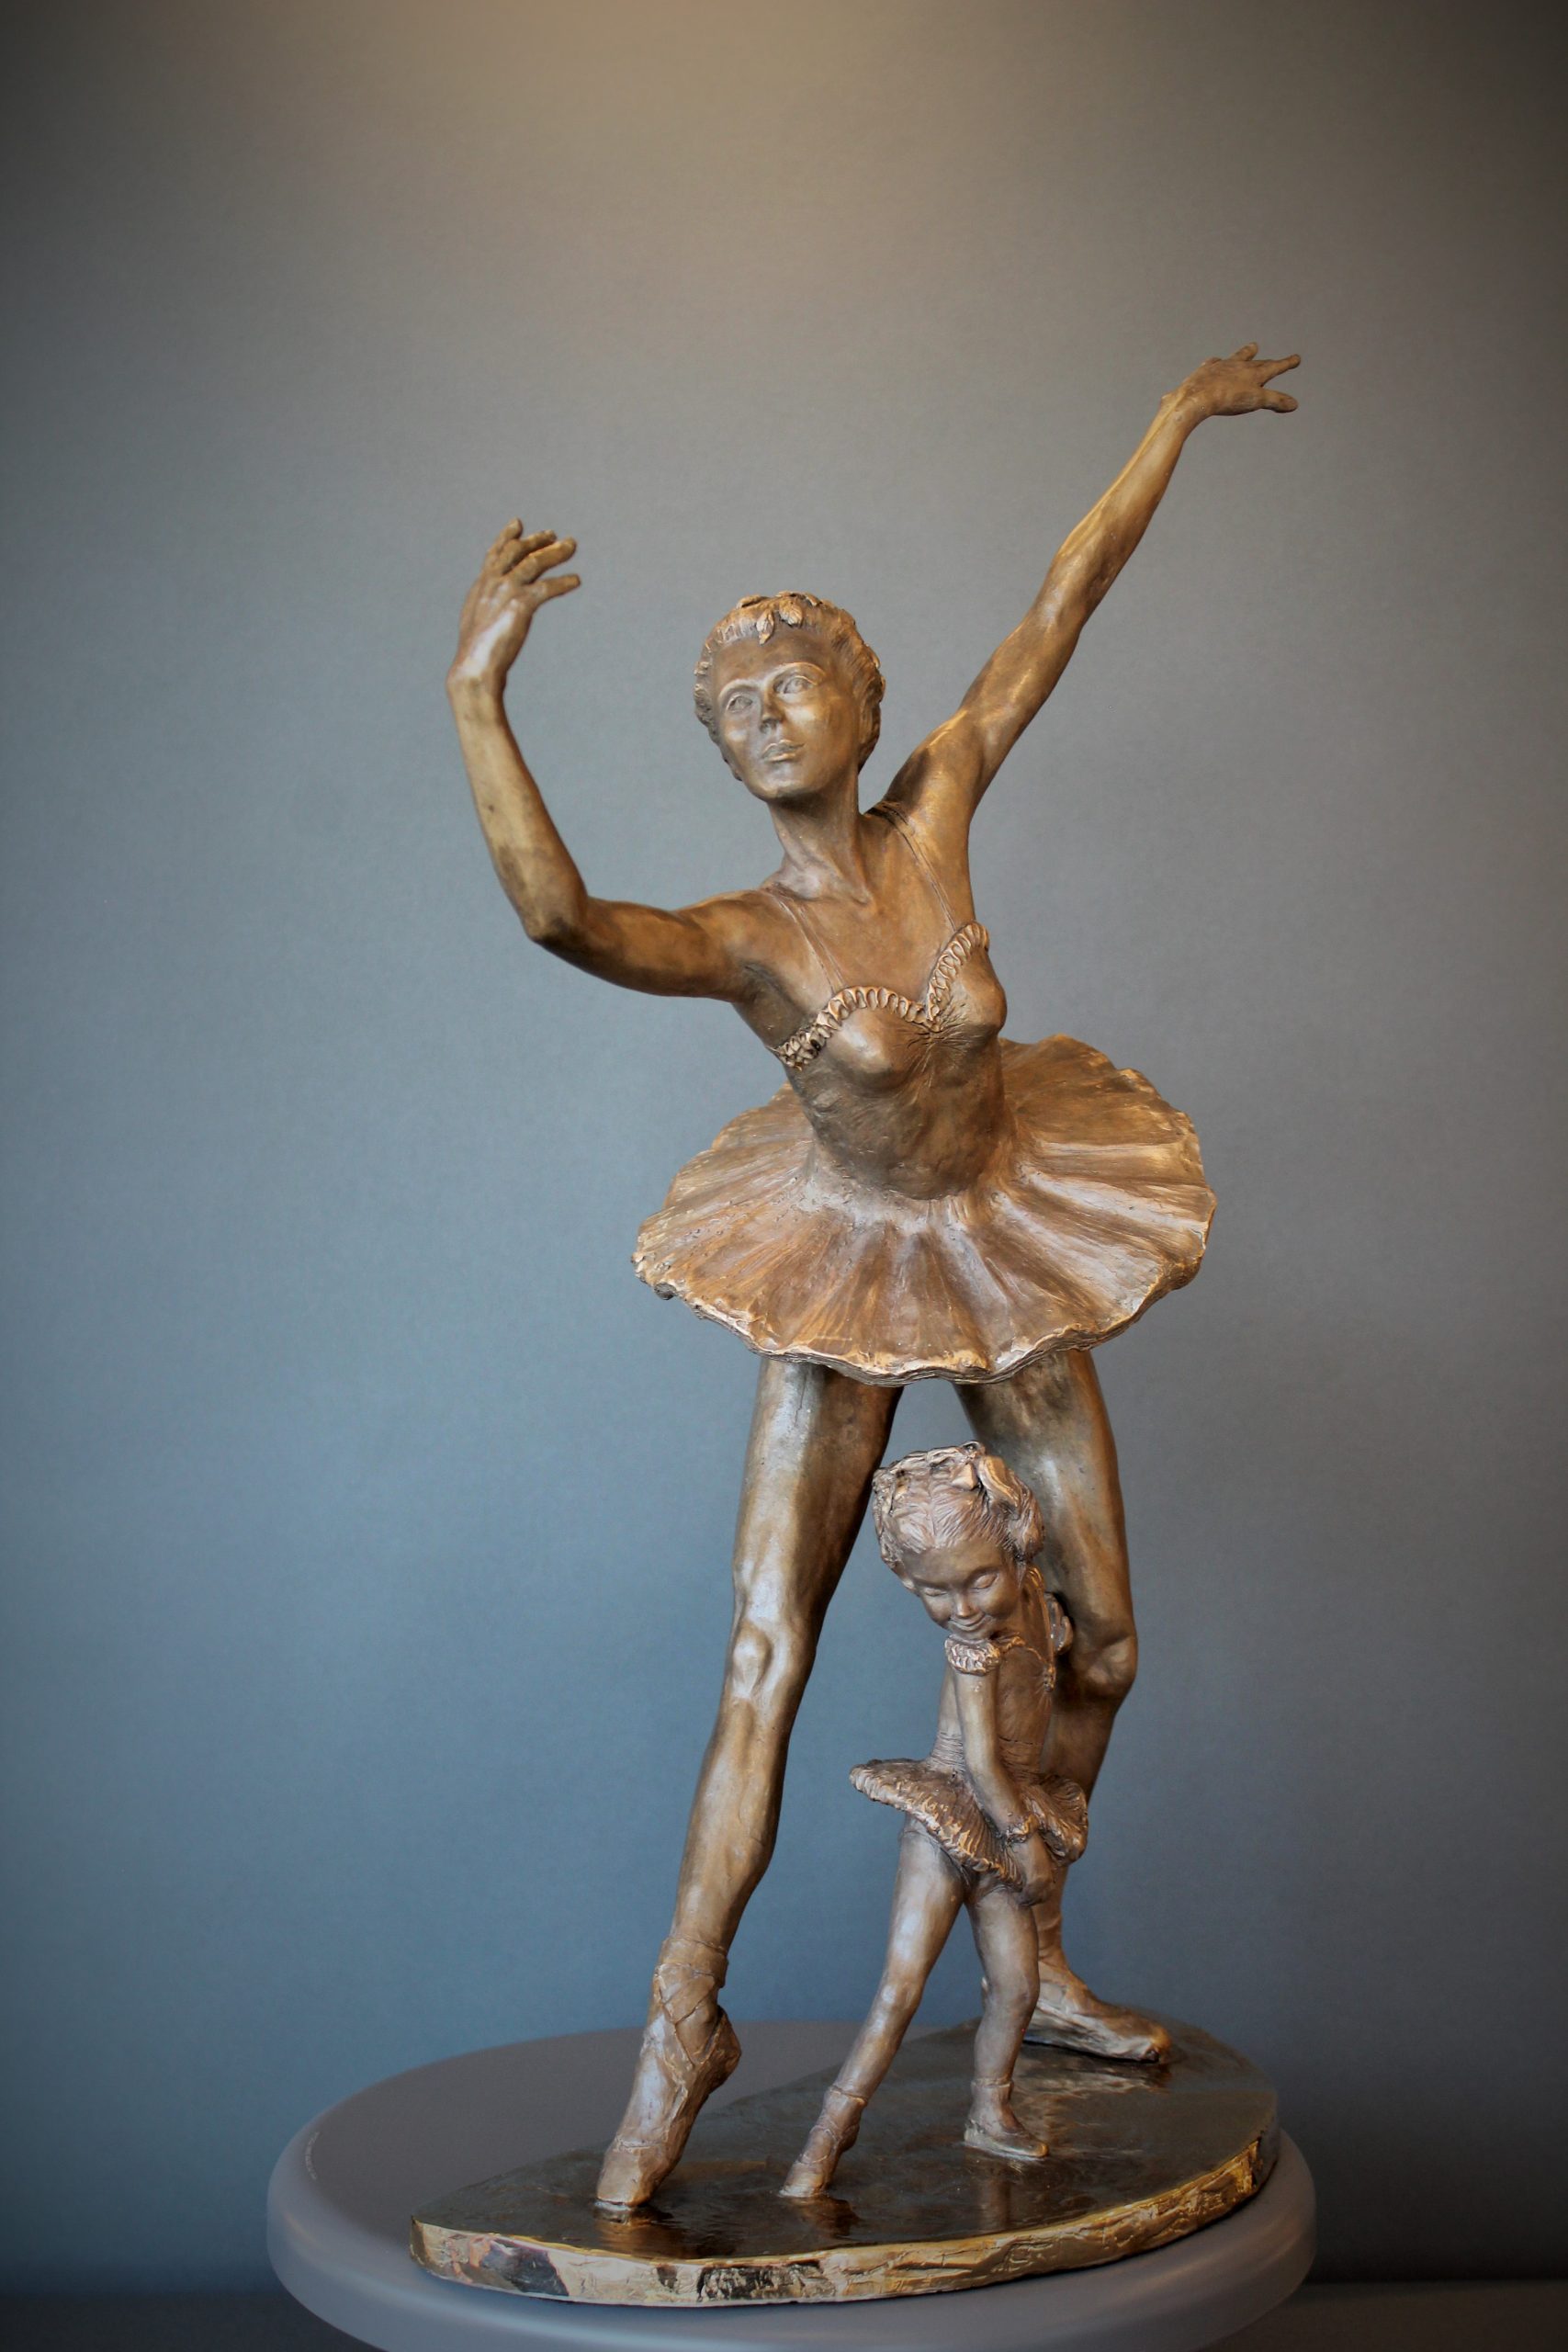 Bronze sculpture of daughter in tutu posing under mother ballerina